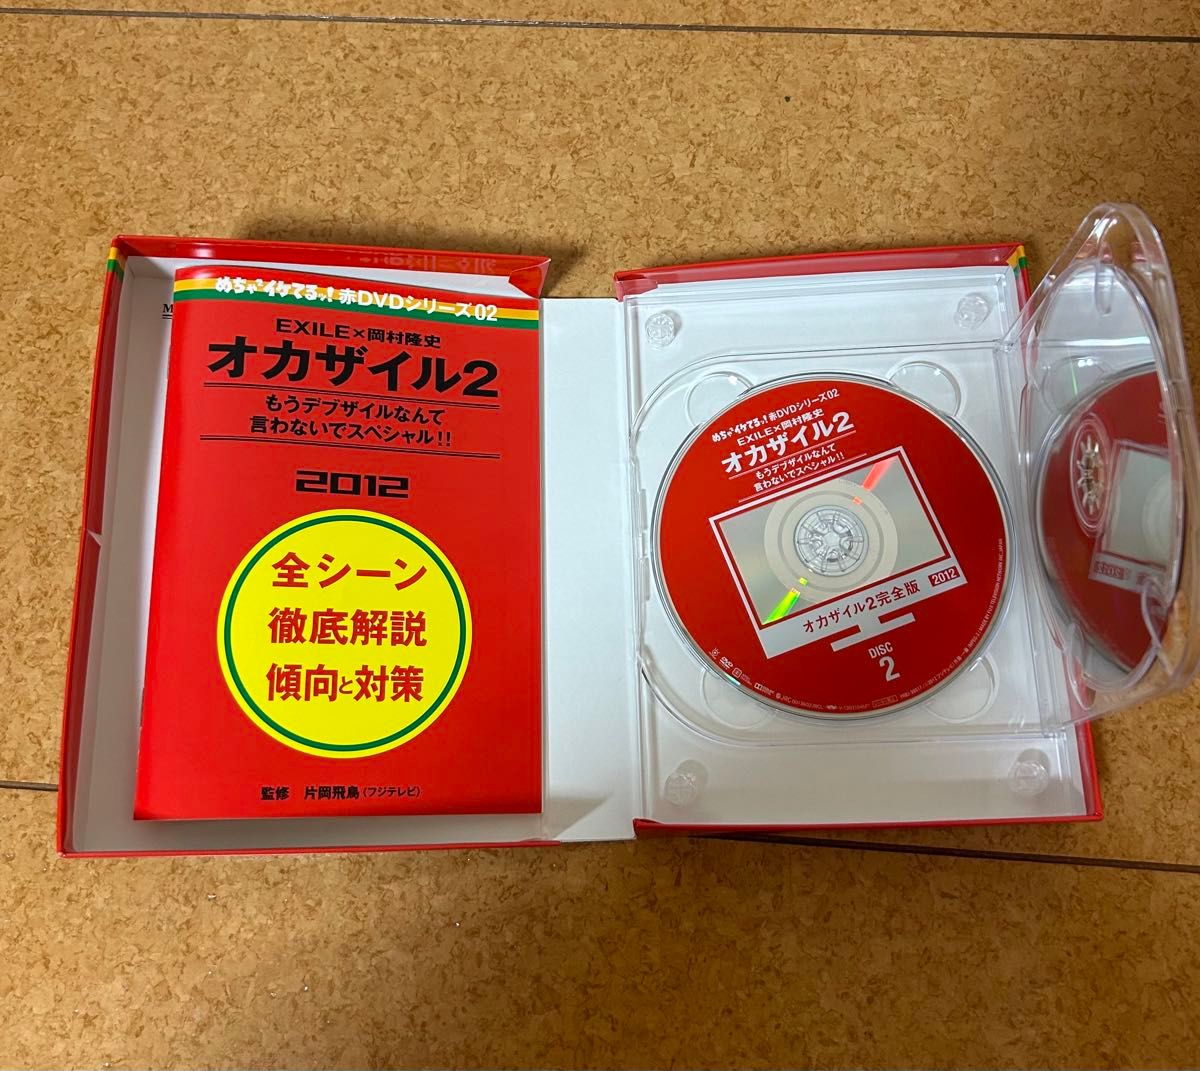 めちゃ 2イケてるッ DVD オカザイル